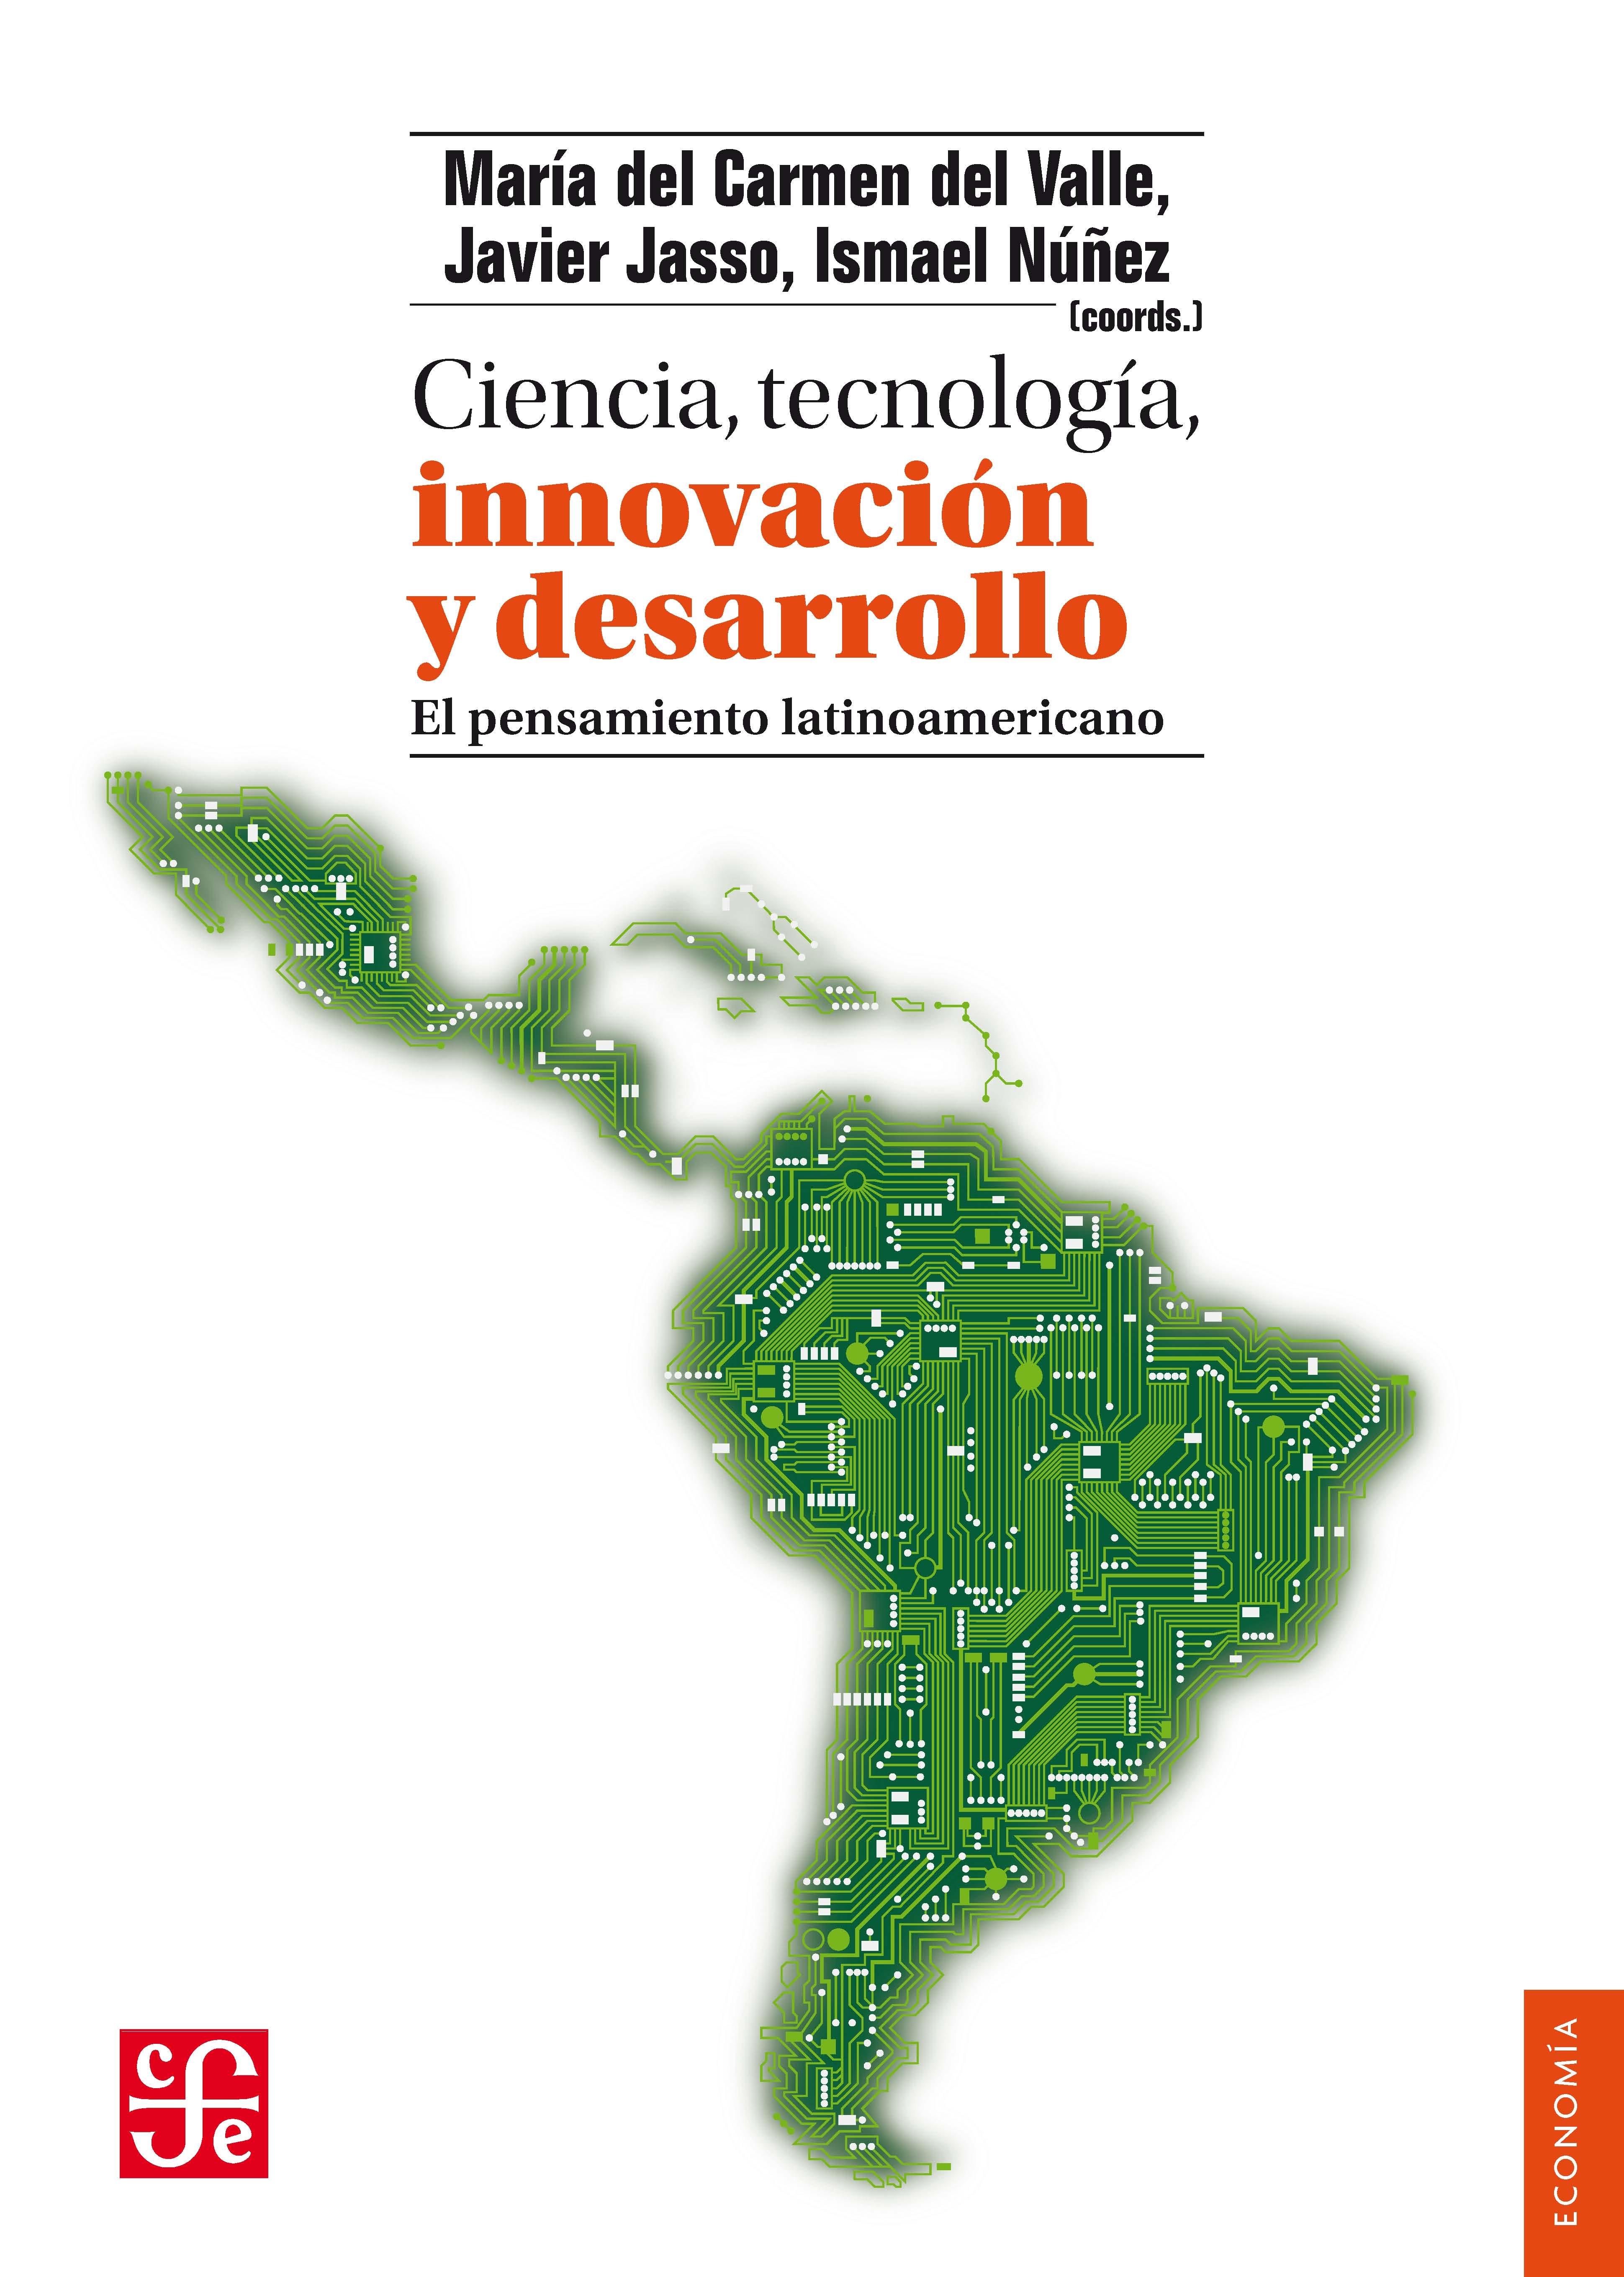 Ciencia, tecnología, innovación y desarrollo "El pensamiento latinoamericano"